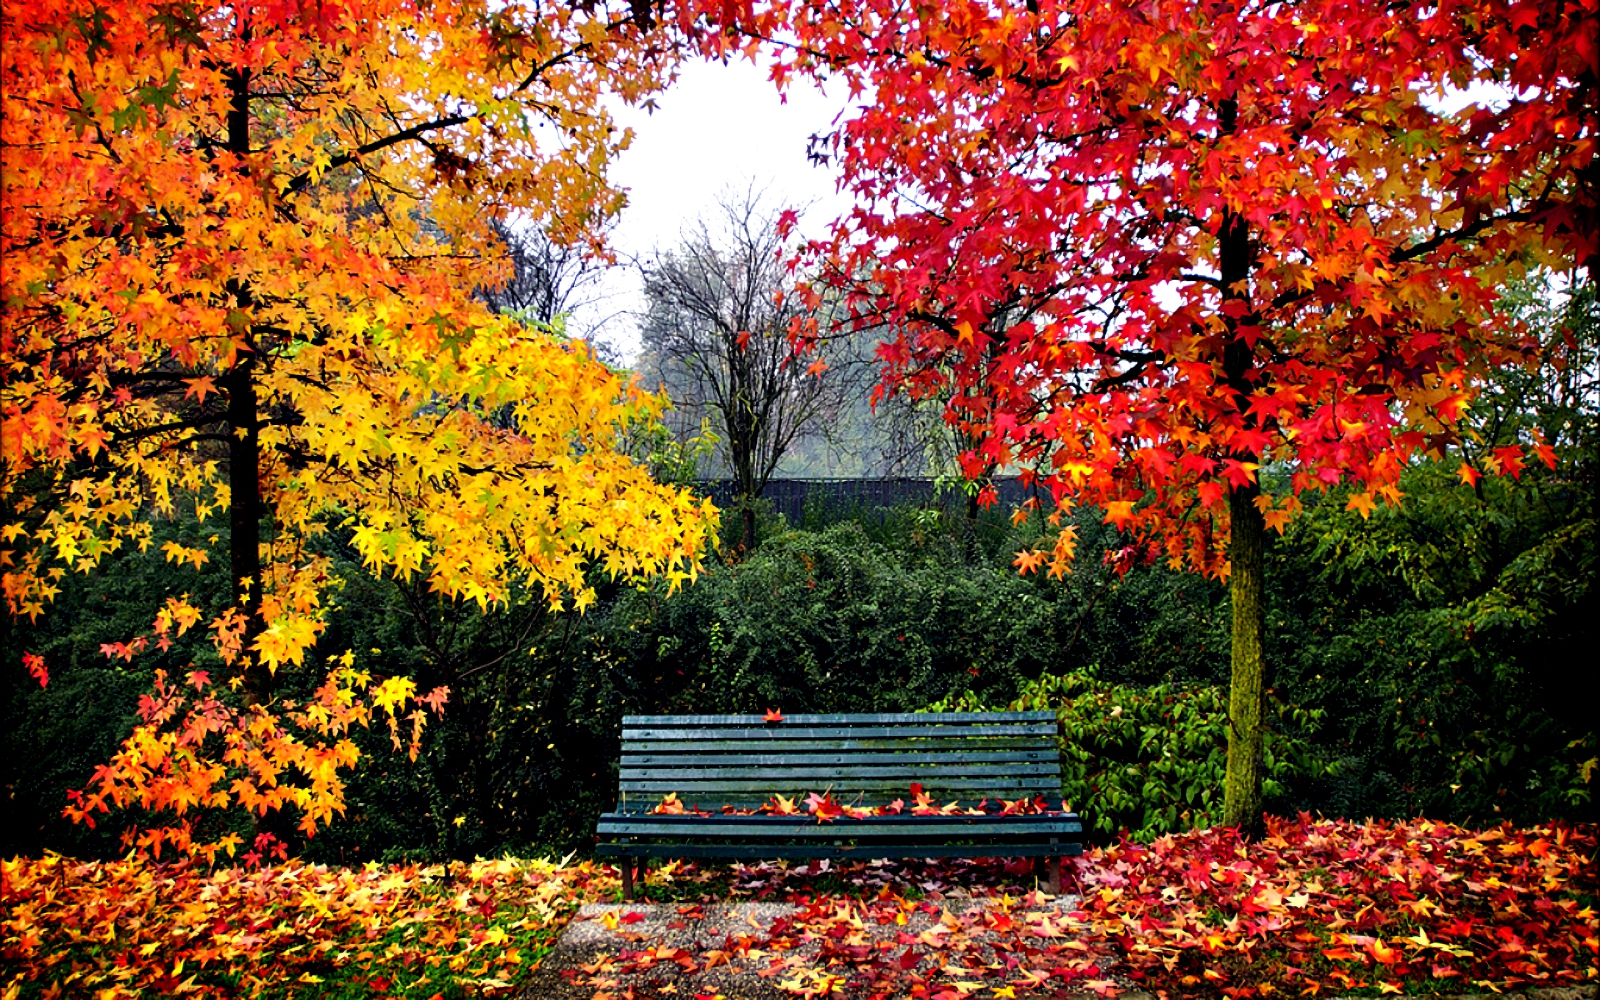 Скачать обои бесплатно Осень, Парк, Дерево, Скамья, Сделано Человеком картинка на рабочий стол ПК